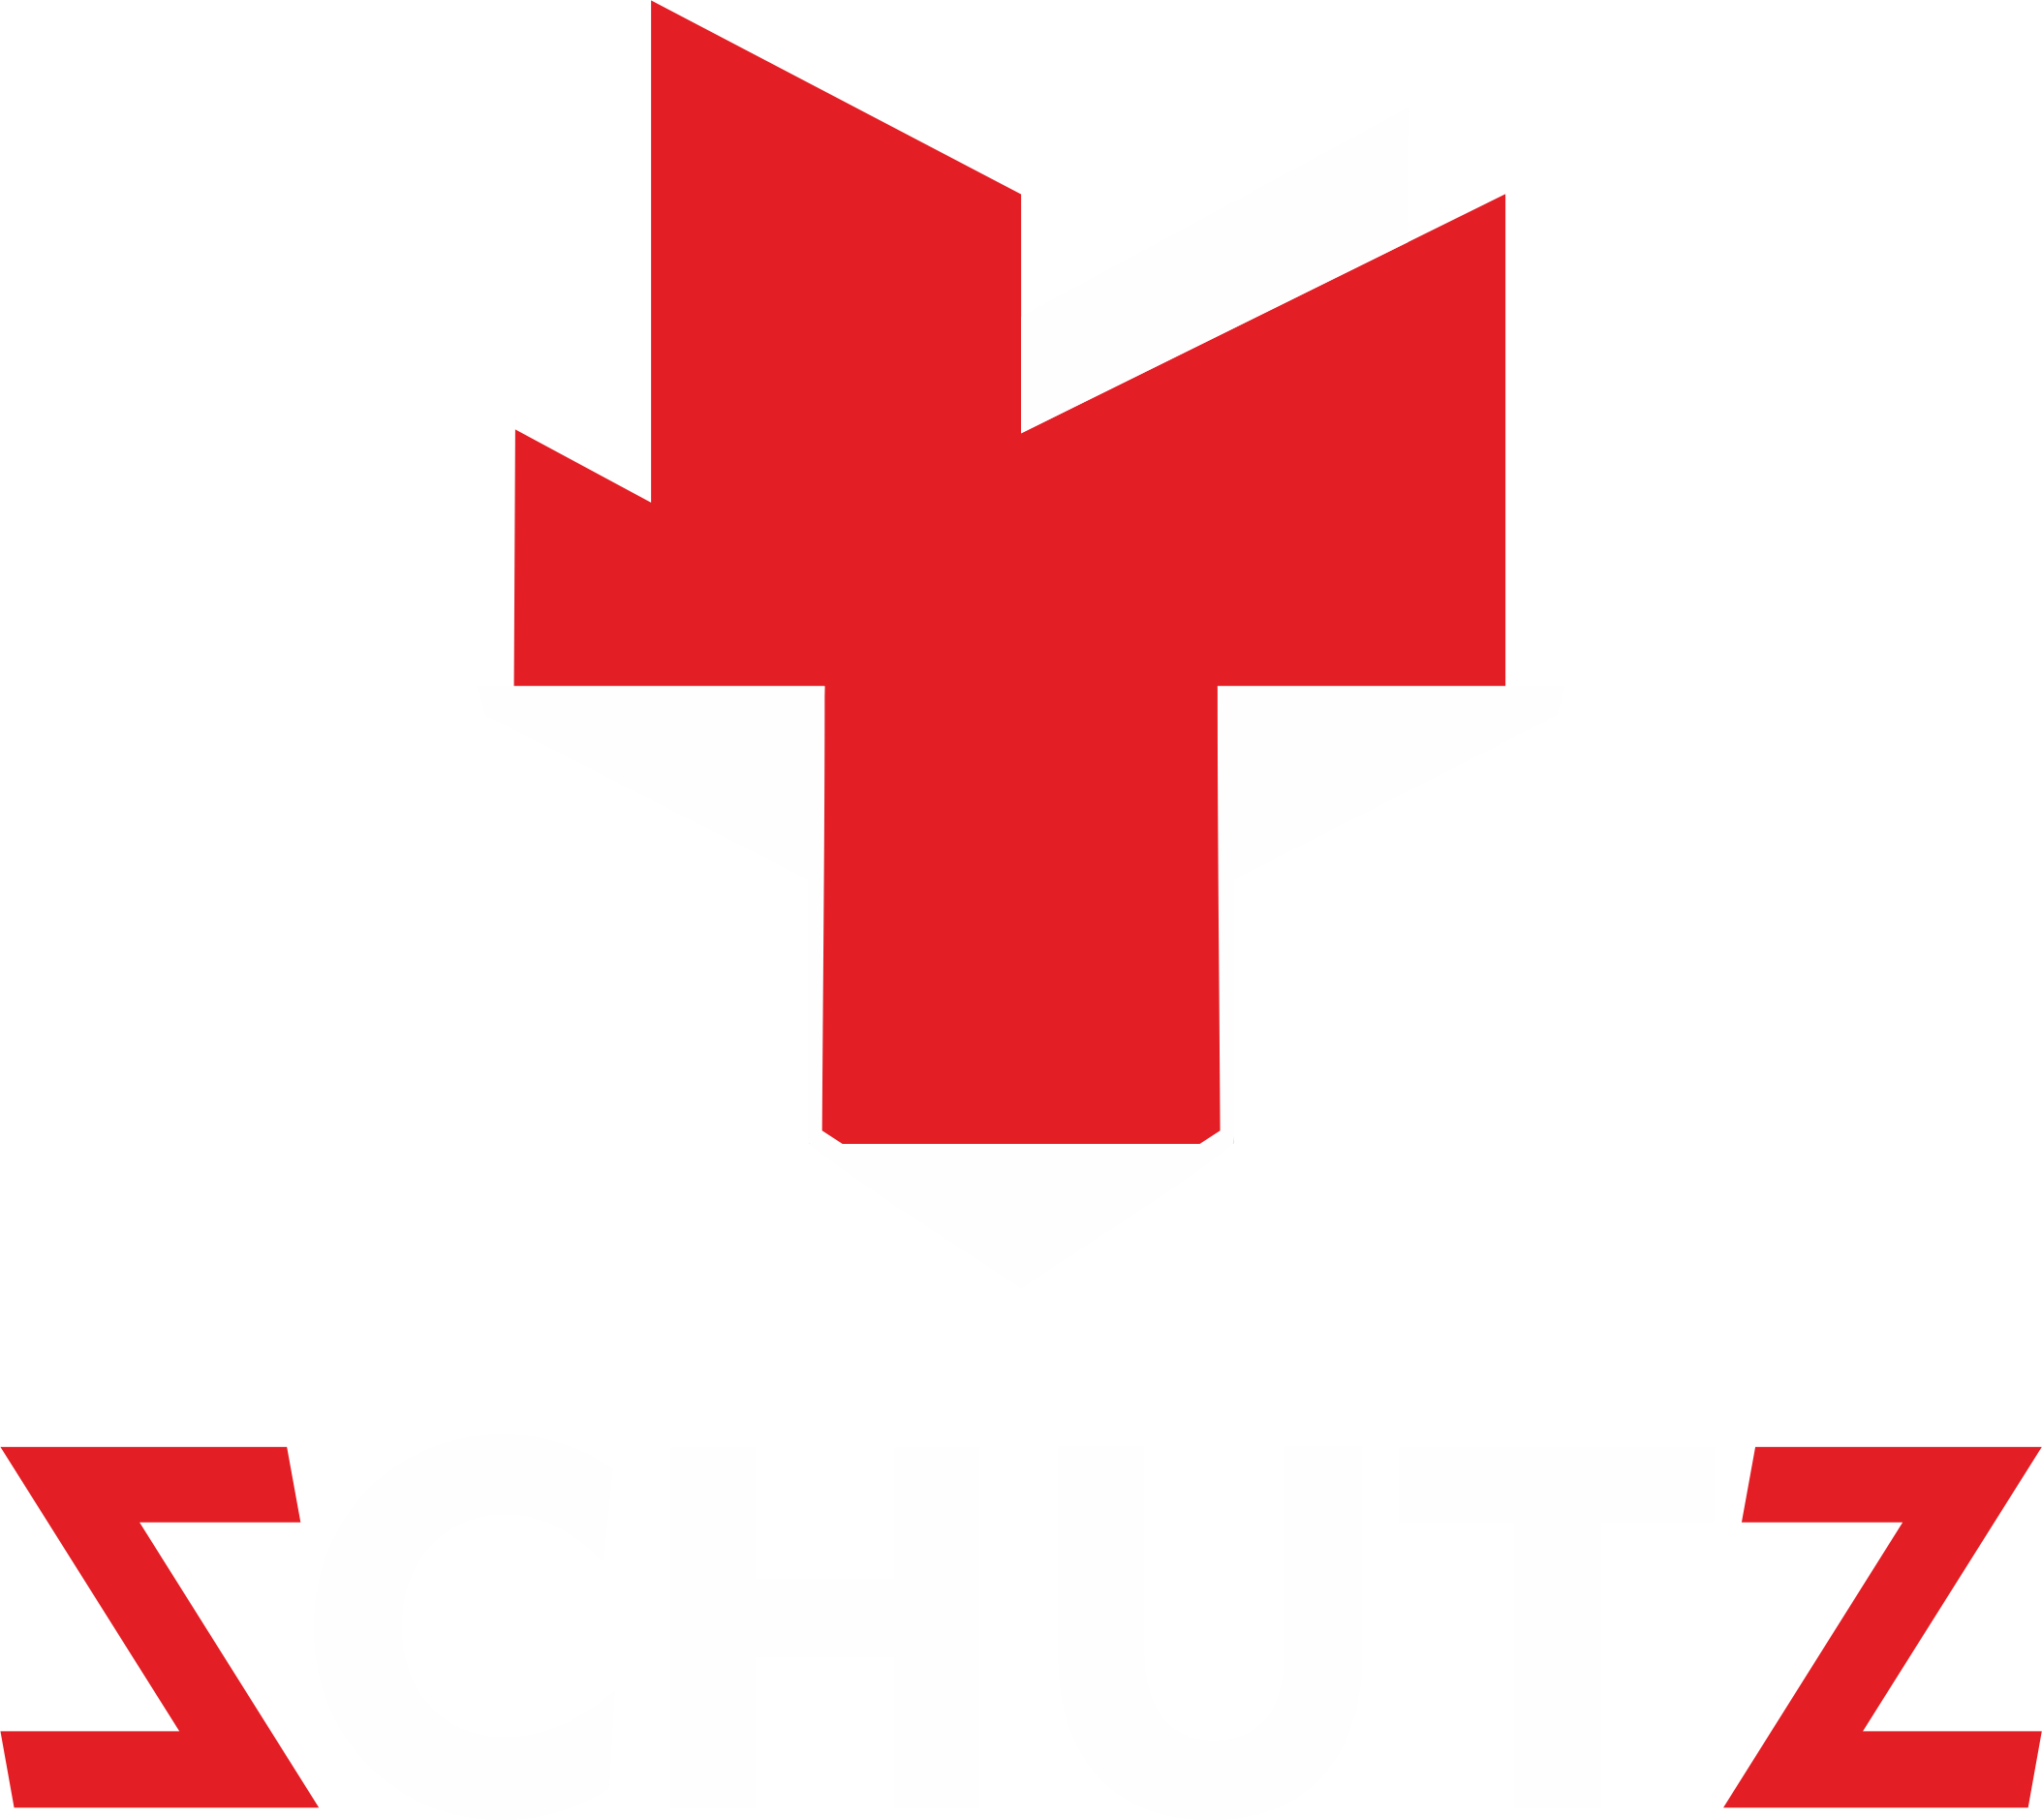 Schutz Group